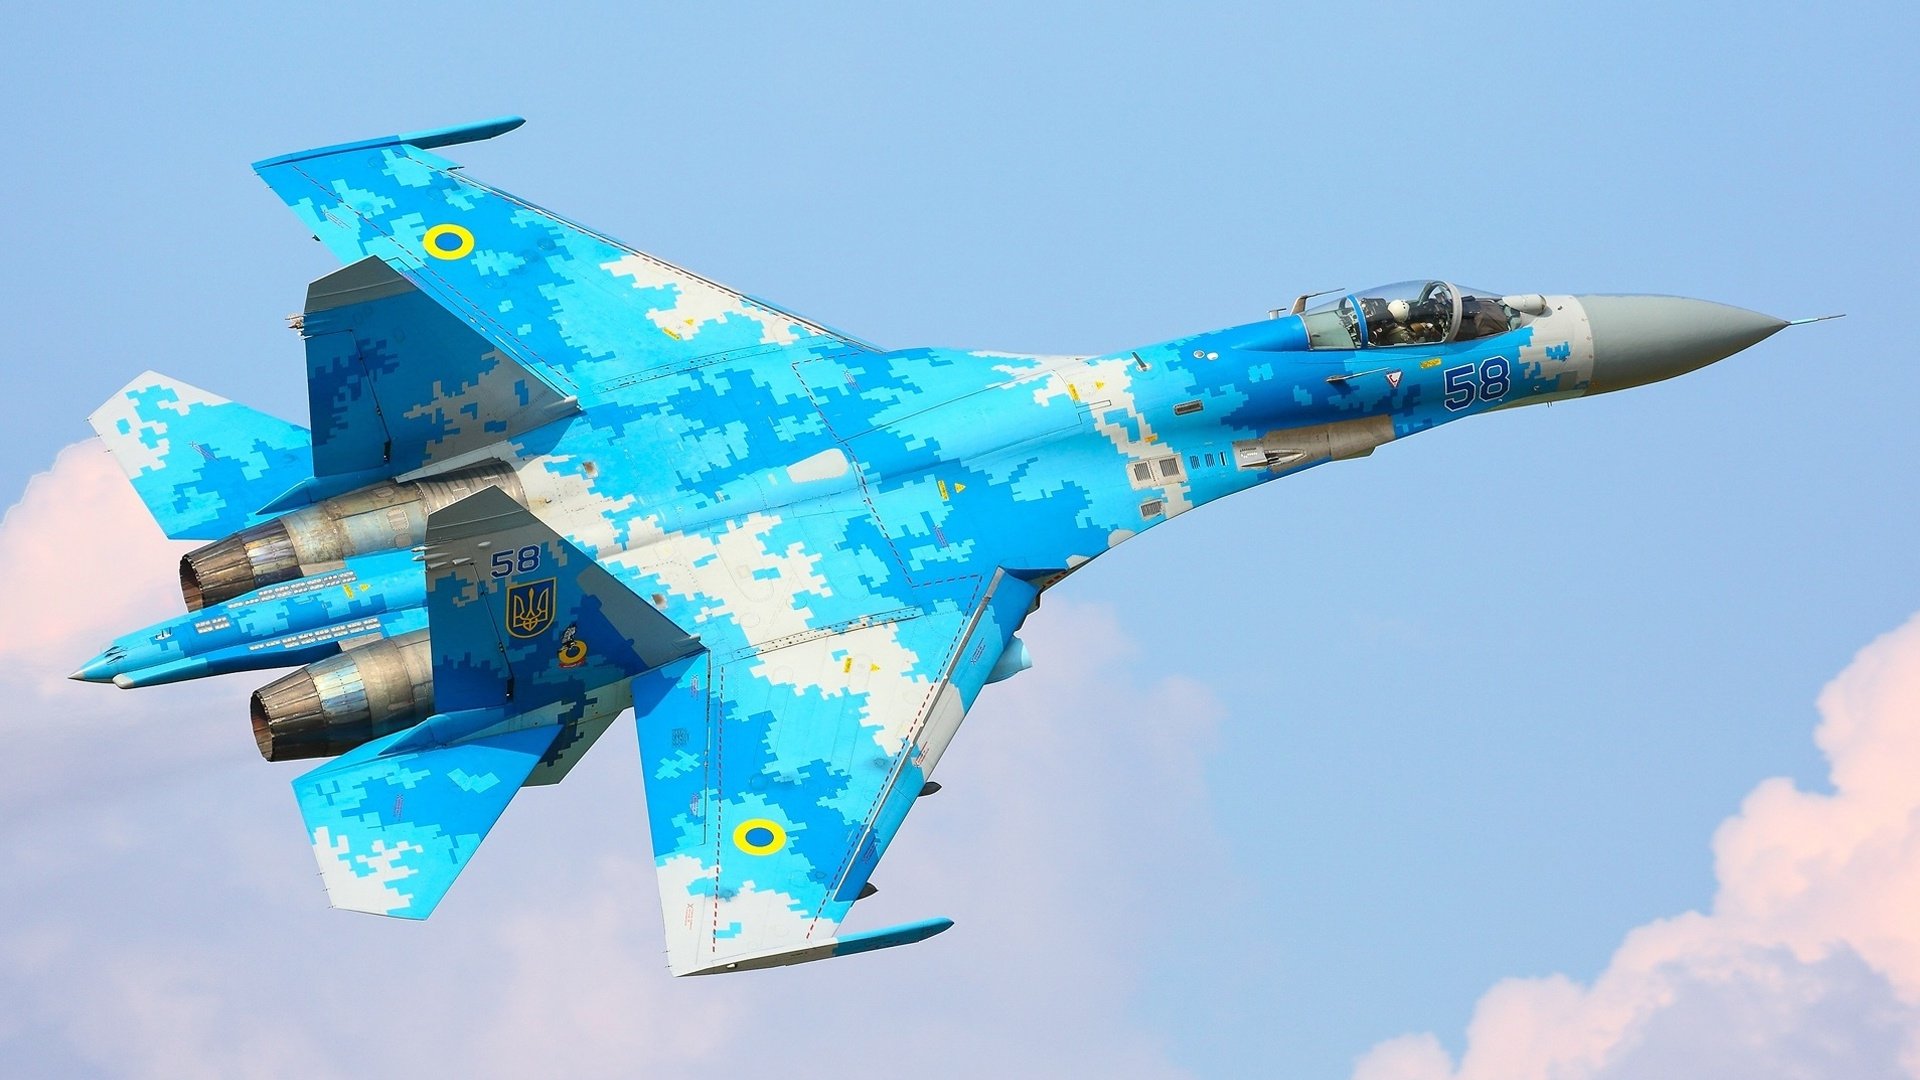 Blue Camouflage Sukhoi Su 27 Soviet Origin Twin Engine